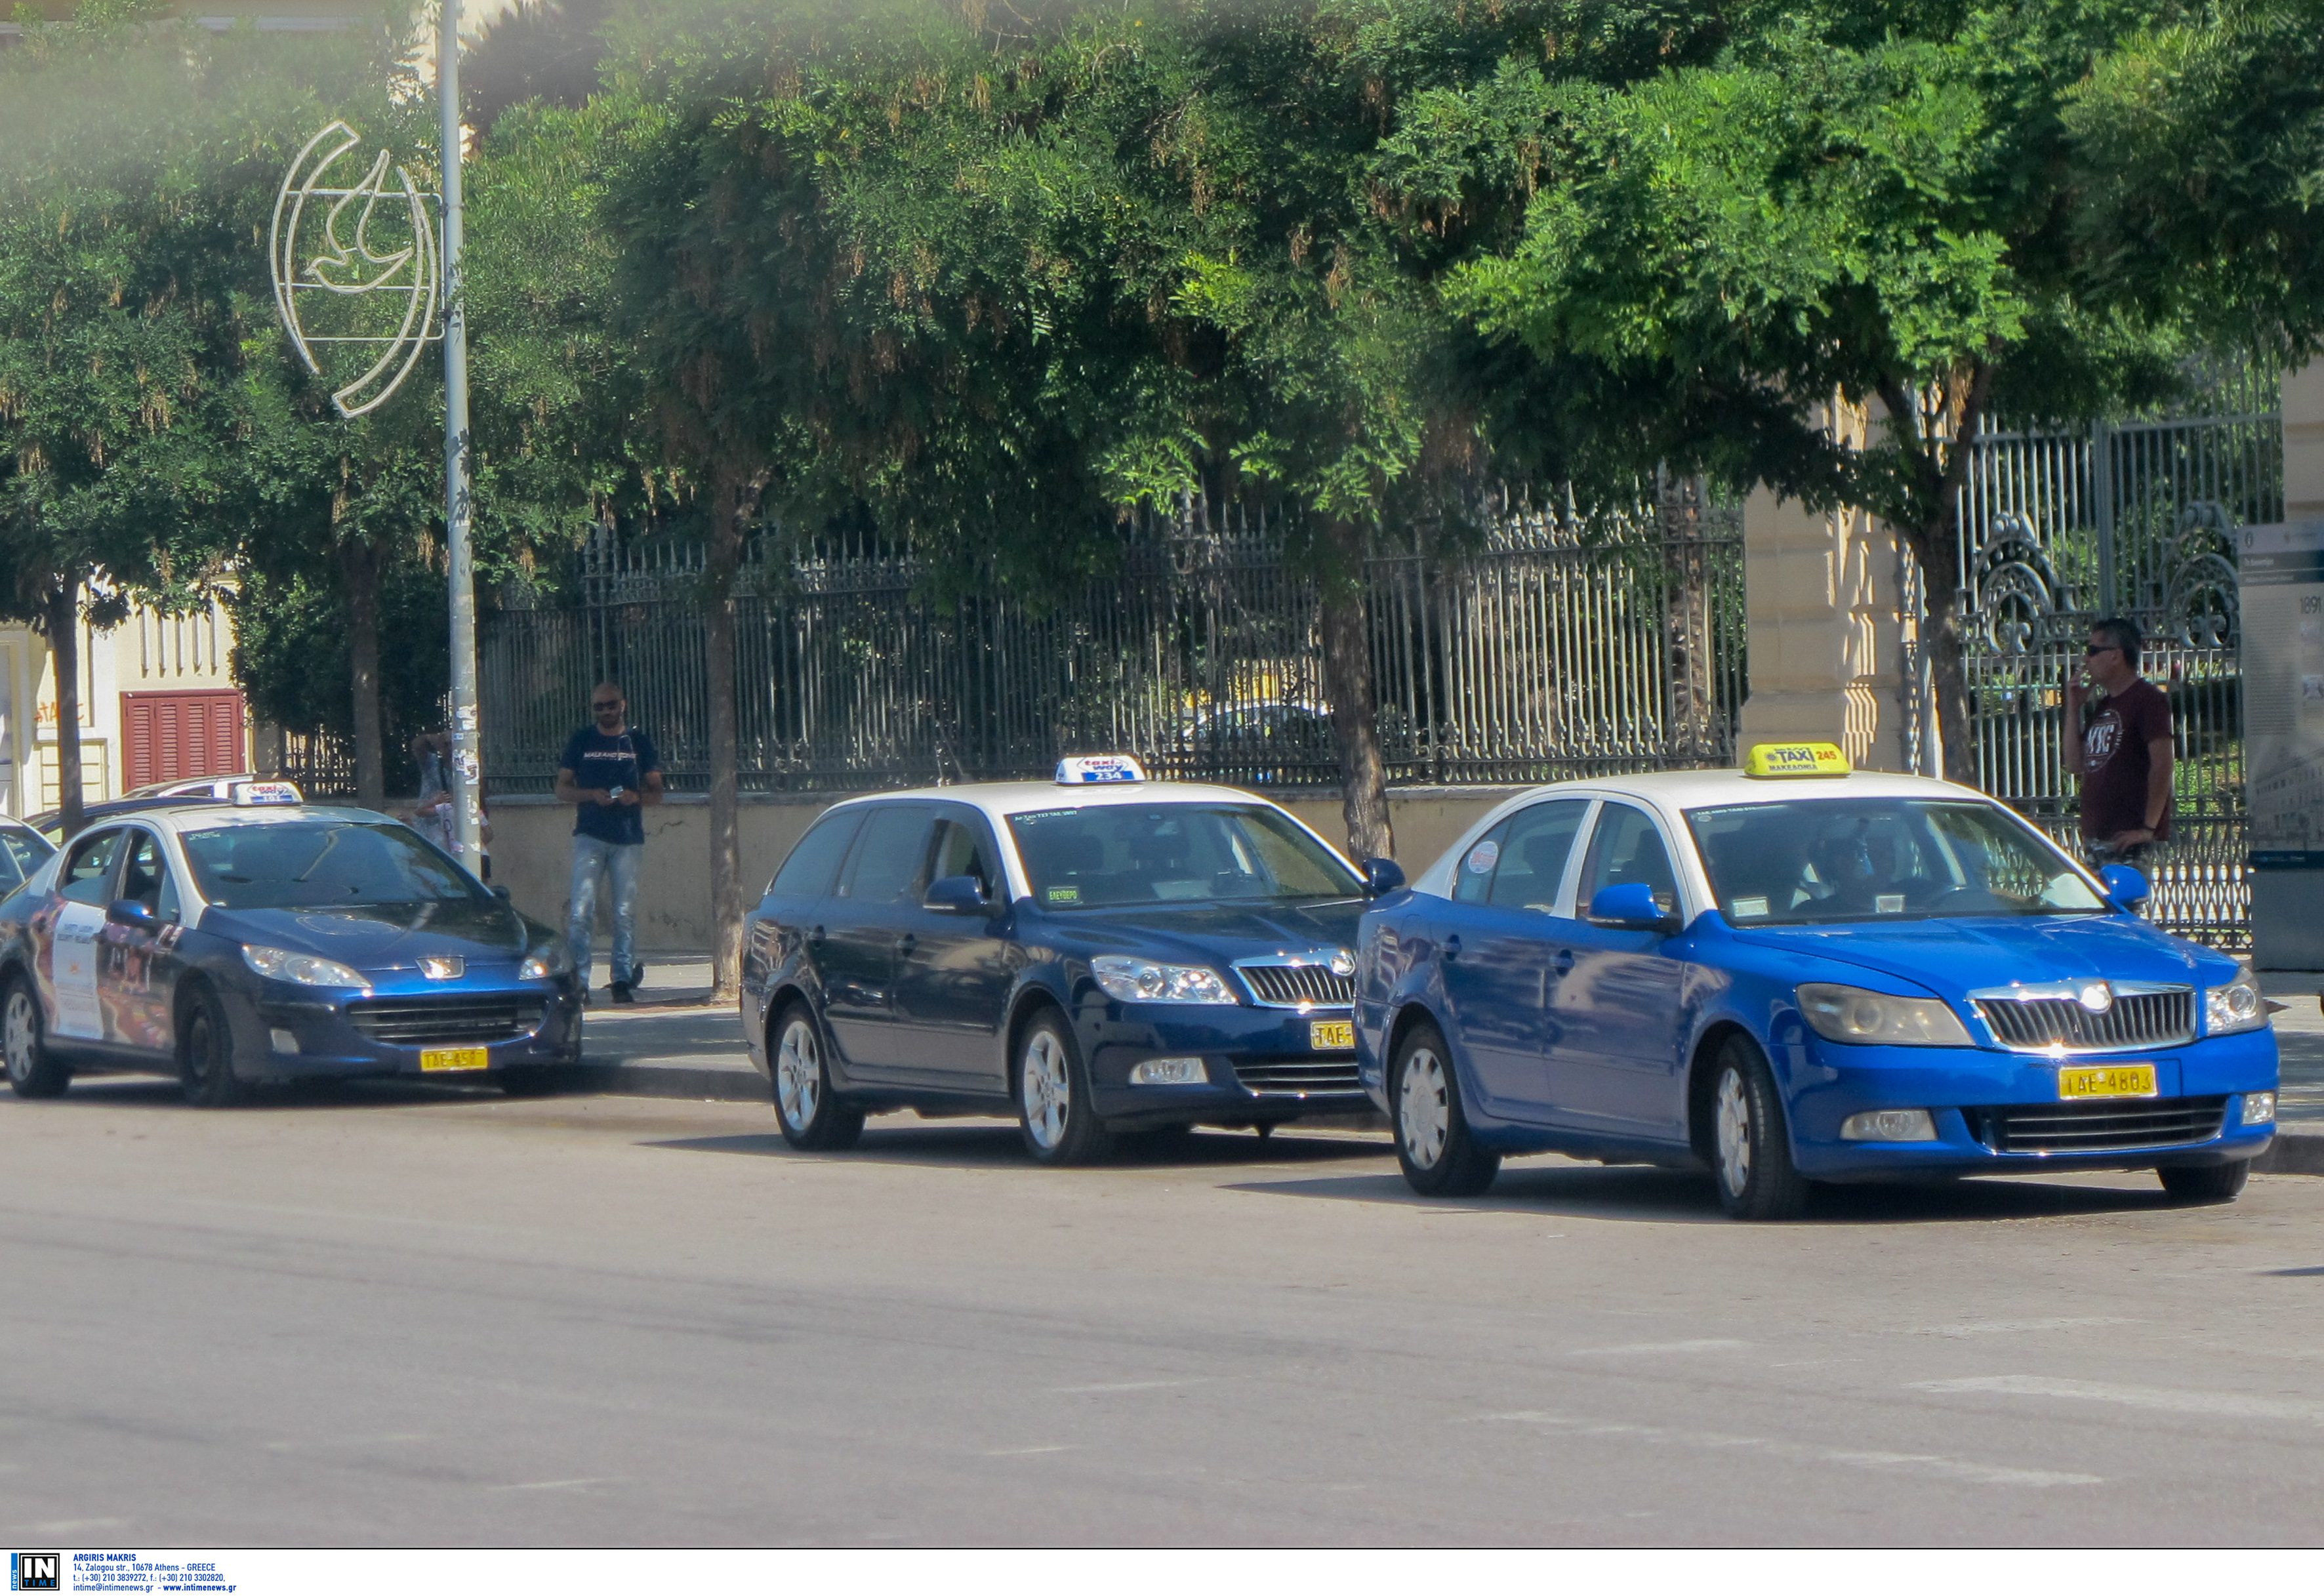 Τις πιάτσες των ταξί επανεξετάζει ο Οργανισμός Συγκοινωνιακού Έργου Θεσσαλονίκης